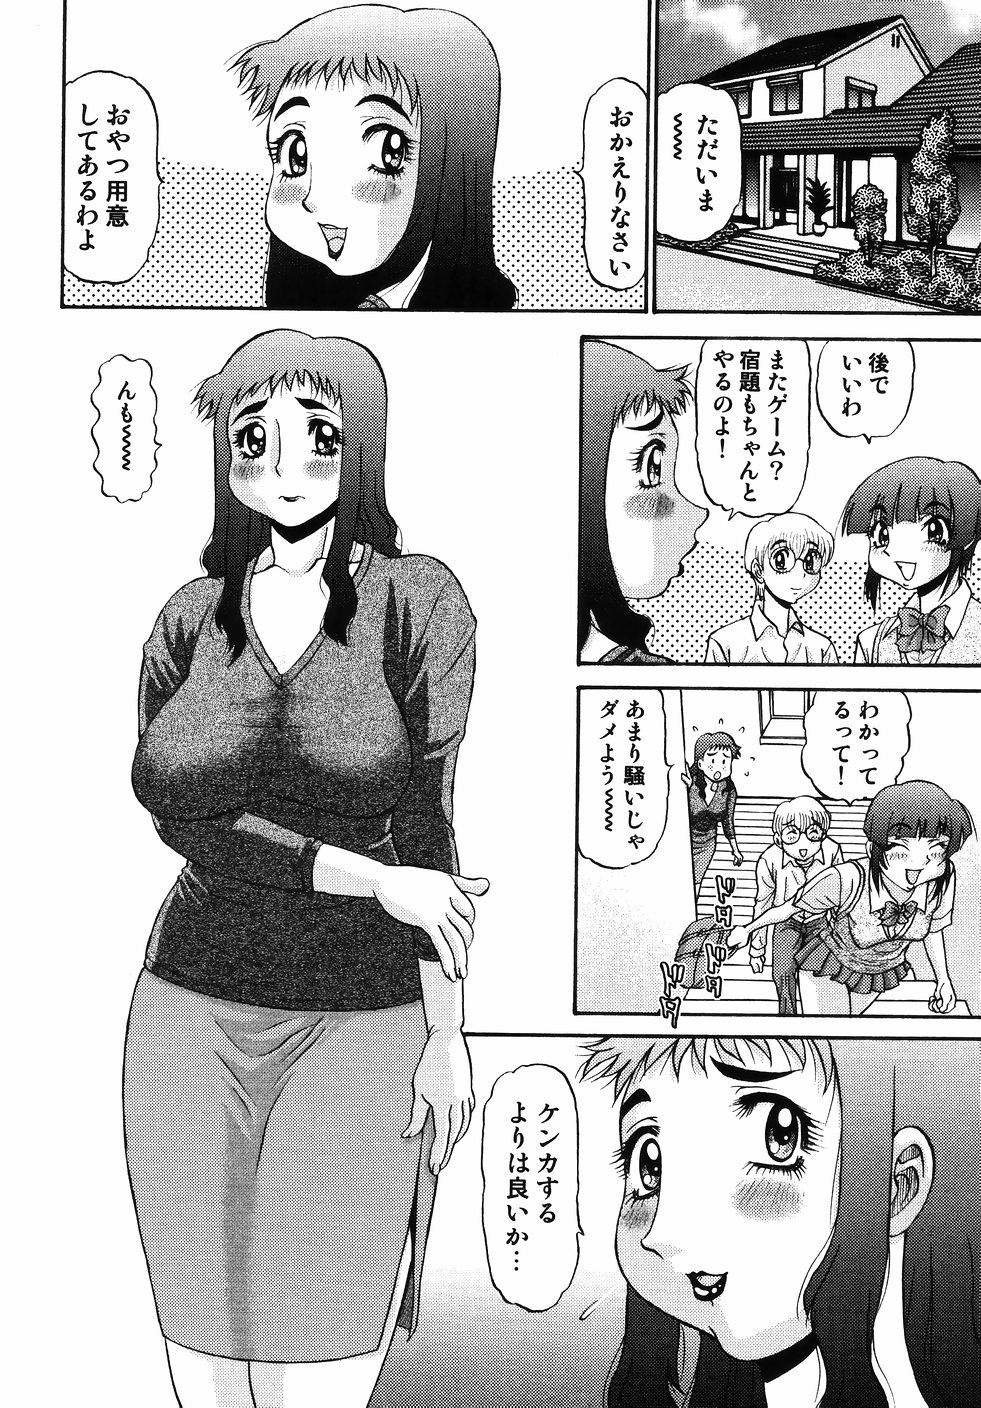 [PJ-1] Nozomi 2 page 18 full